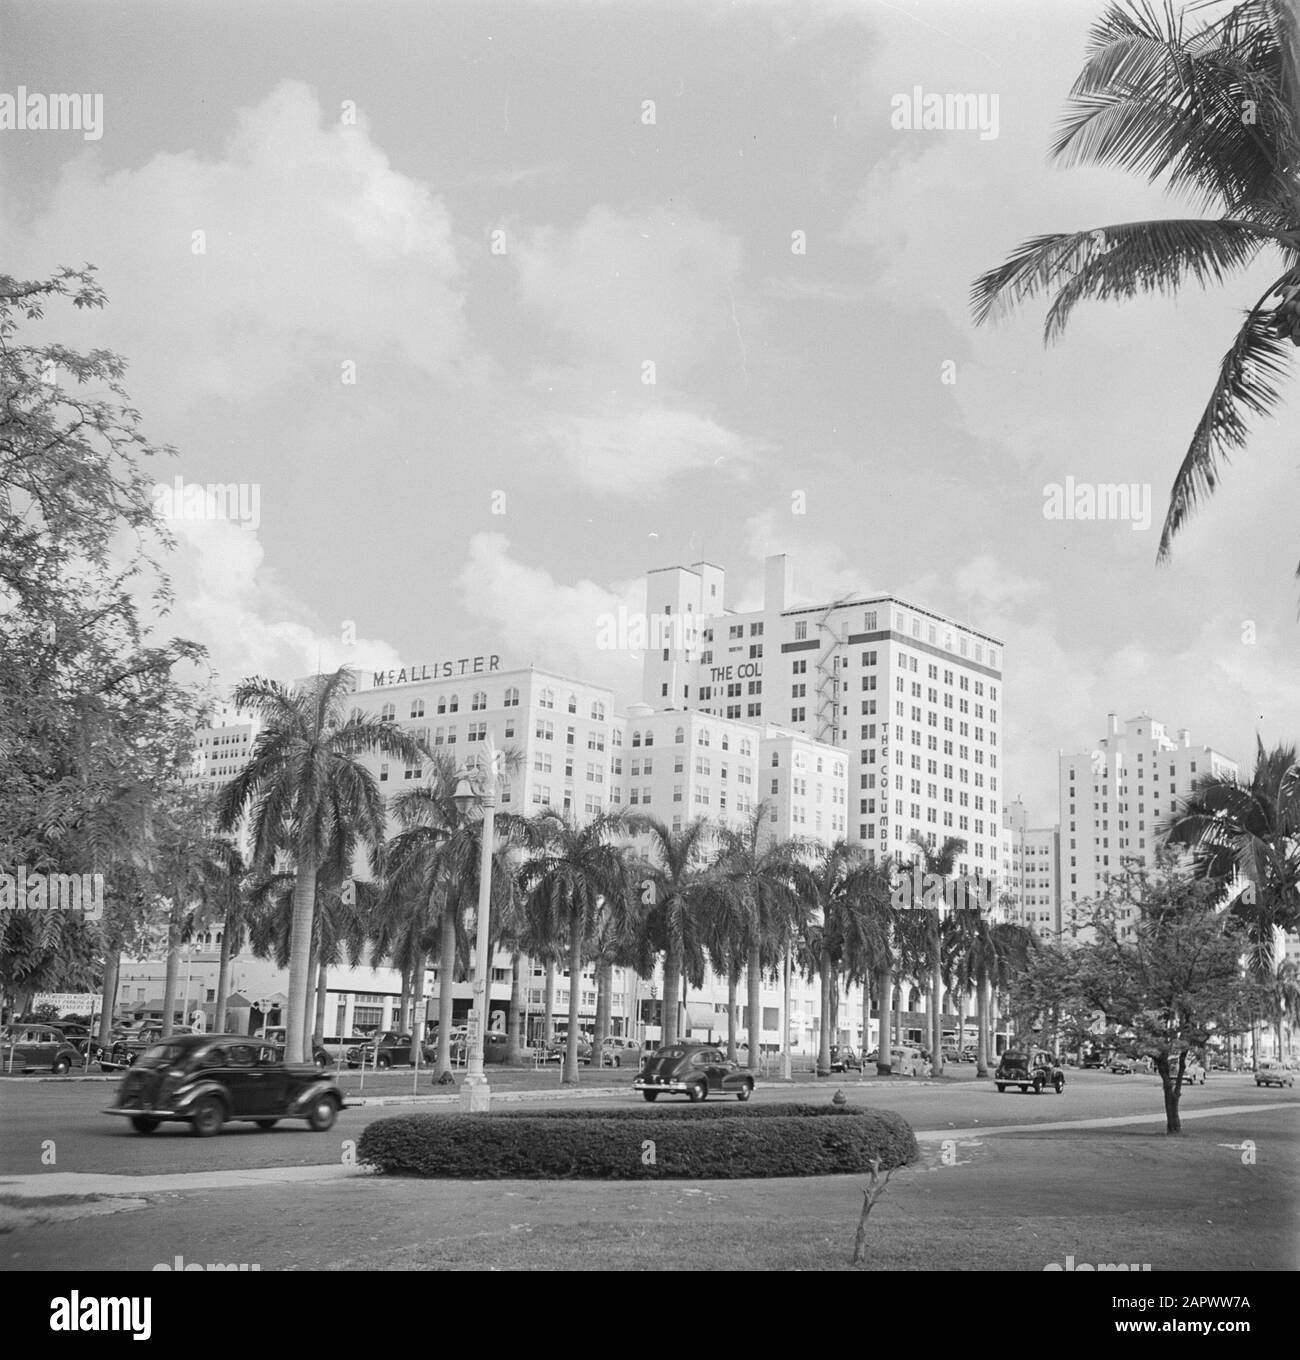 Reportage Miami Ocean Drive Boulevard à Miami avec le Colonial et le Mac Allistar Hotel Date: 1948 lieu: Miami, USA mots clés: Voitures, hôtels, images de la ville Banque D'Images